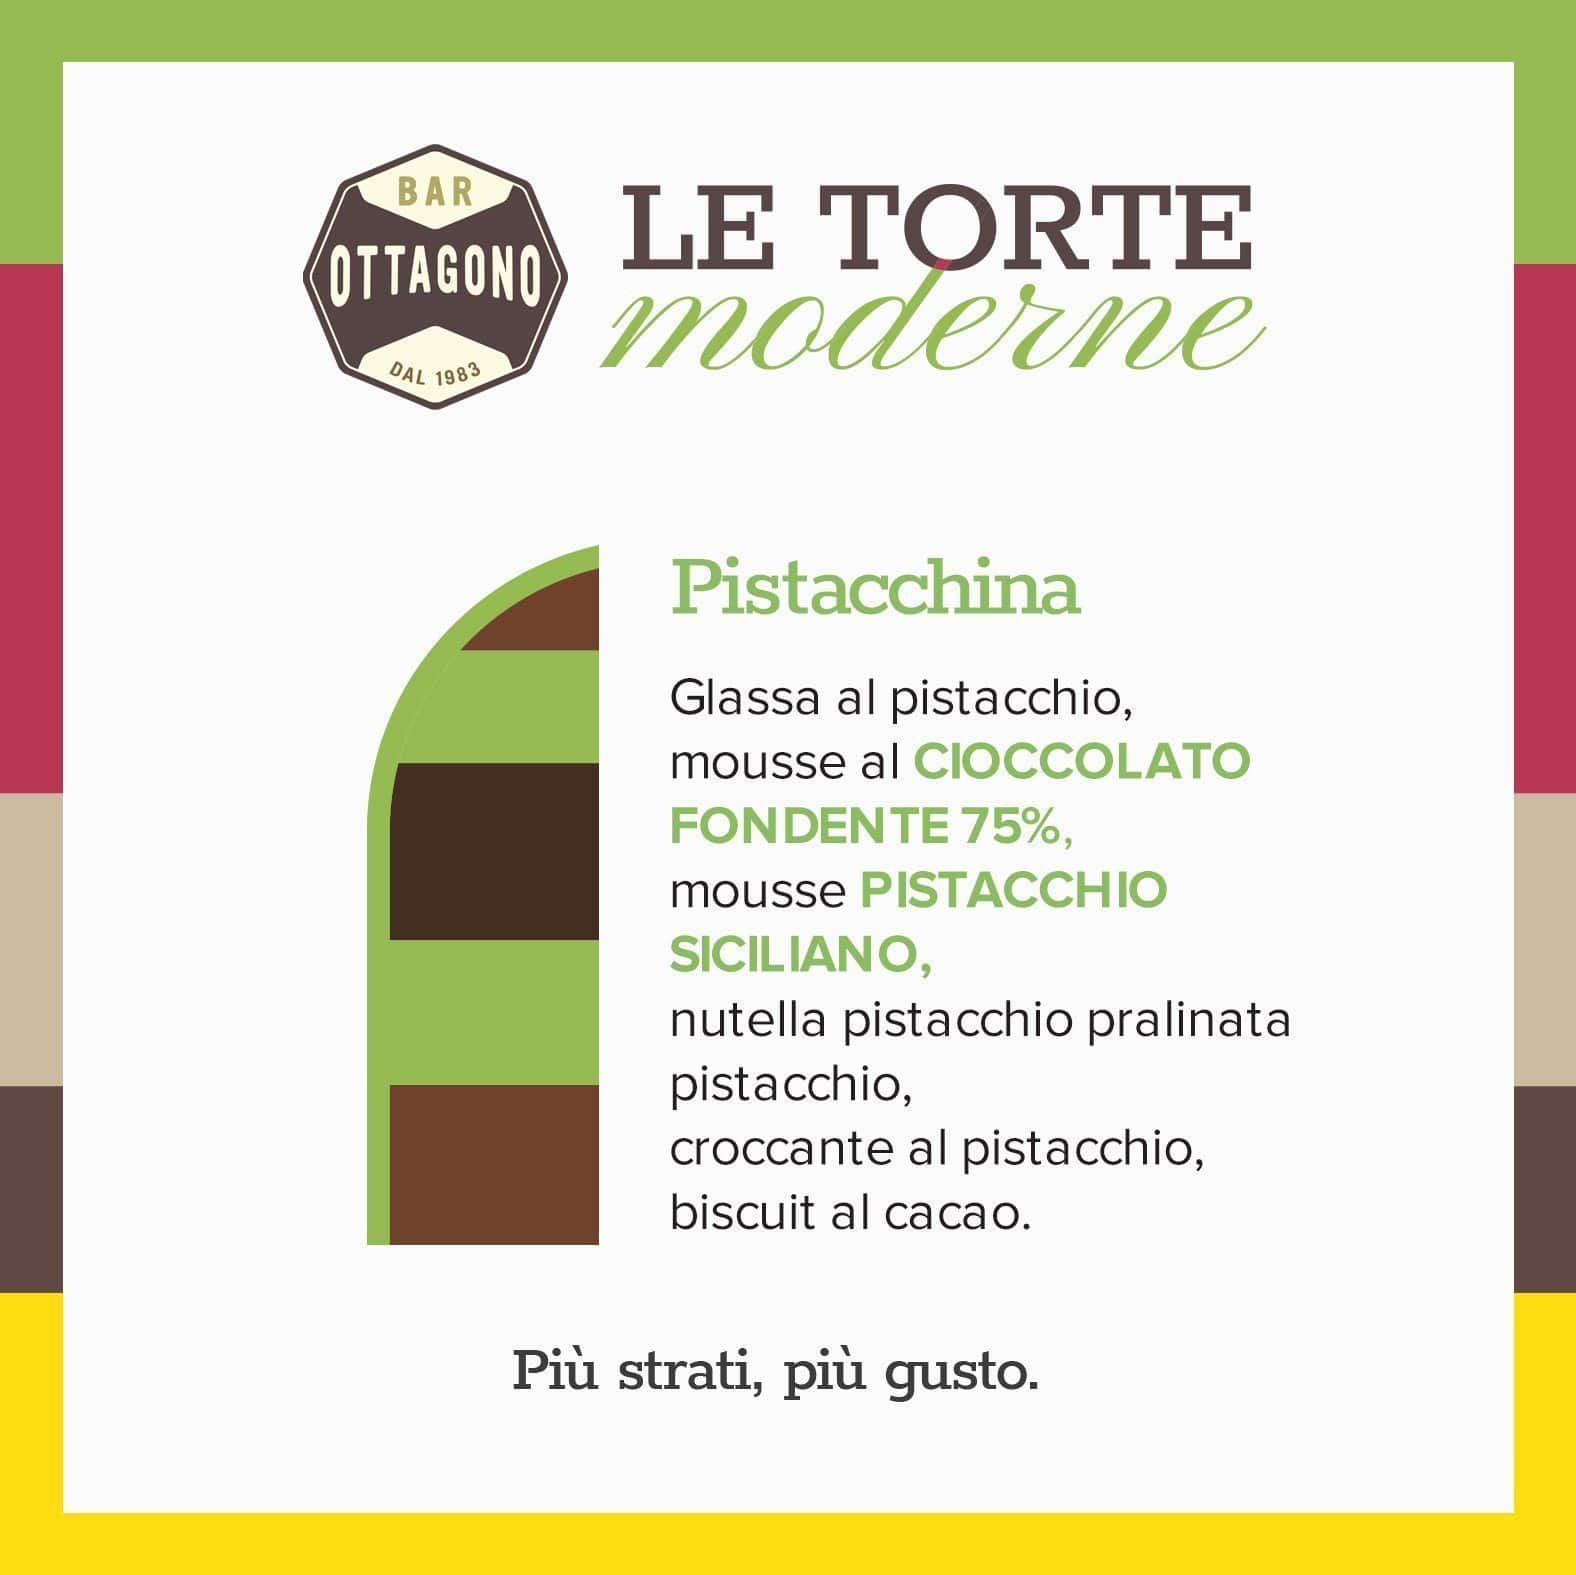 Pistacchina - cioccolato fondente 75% & mousse al pistacchio - Ottagono - Pasticceria dal 1983 - Torte in Pasticceria Moderna - sicilia - catania - online